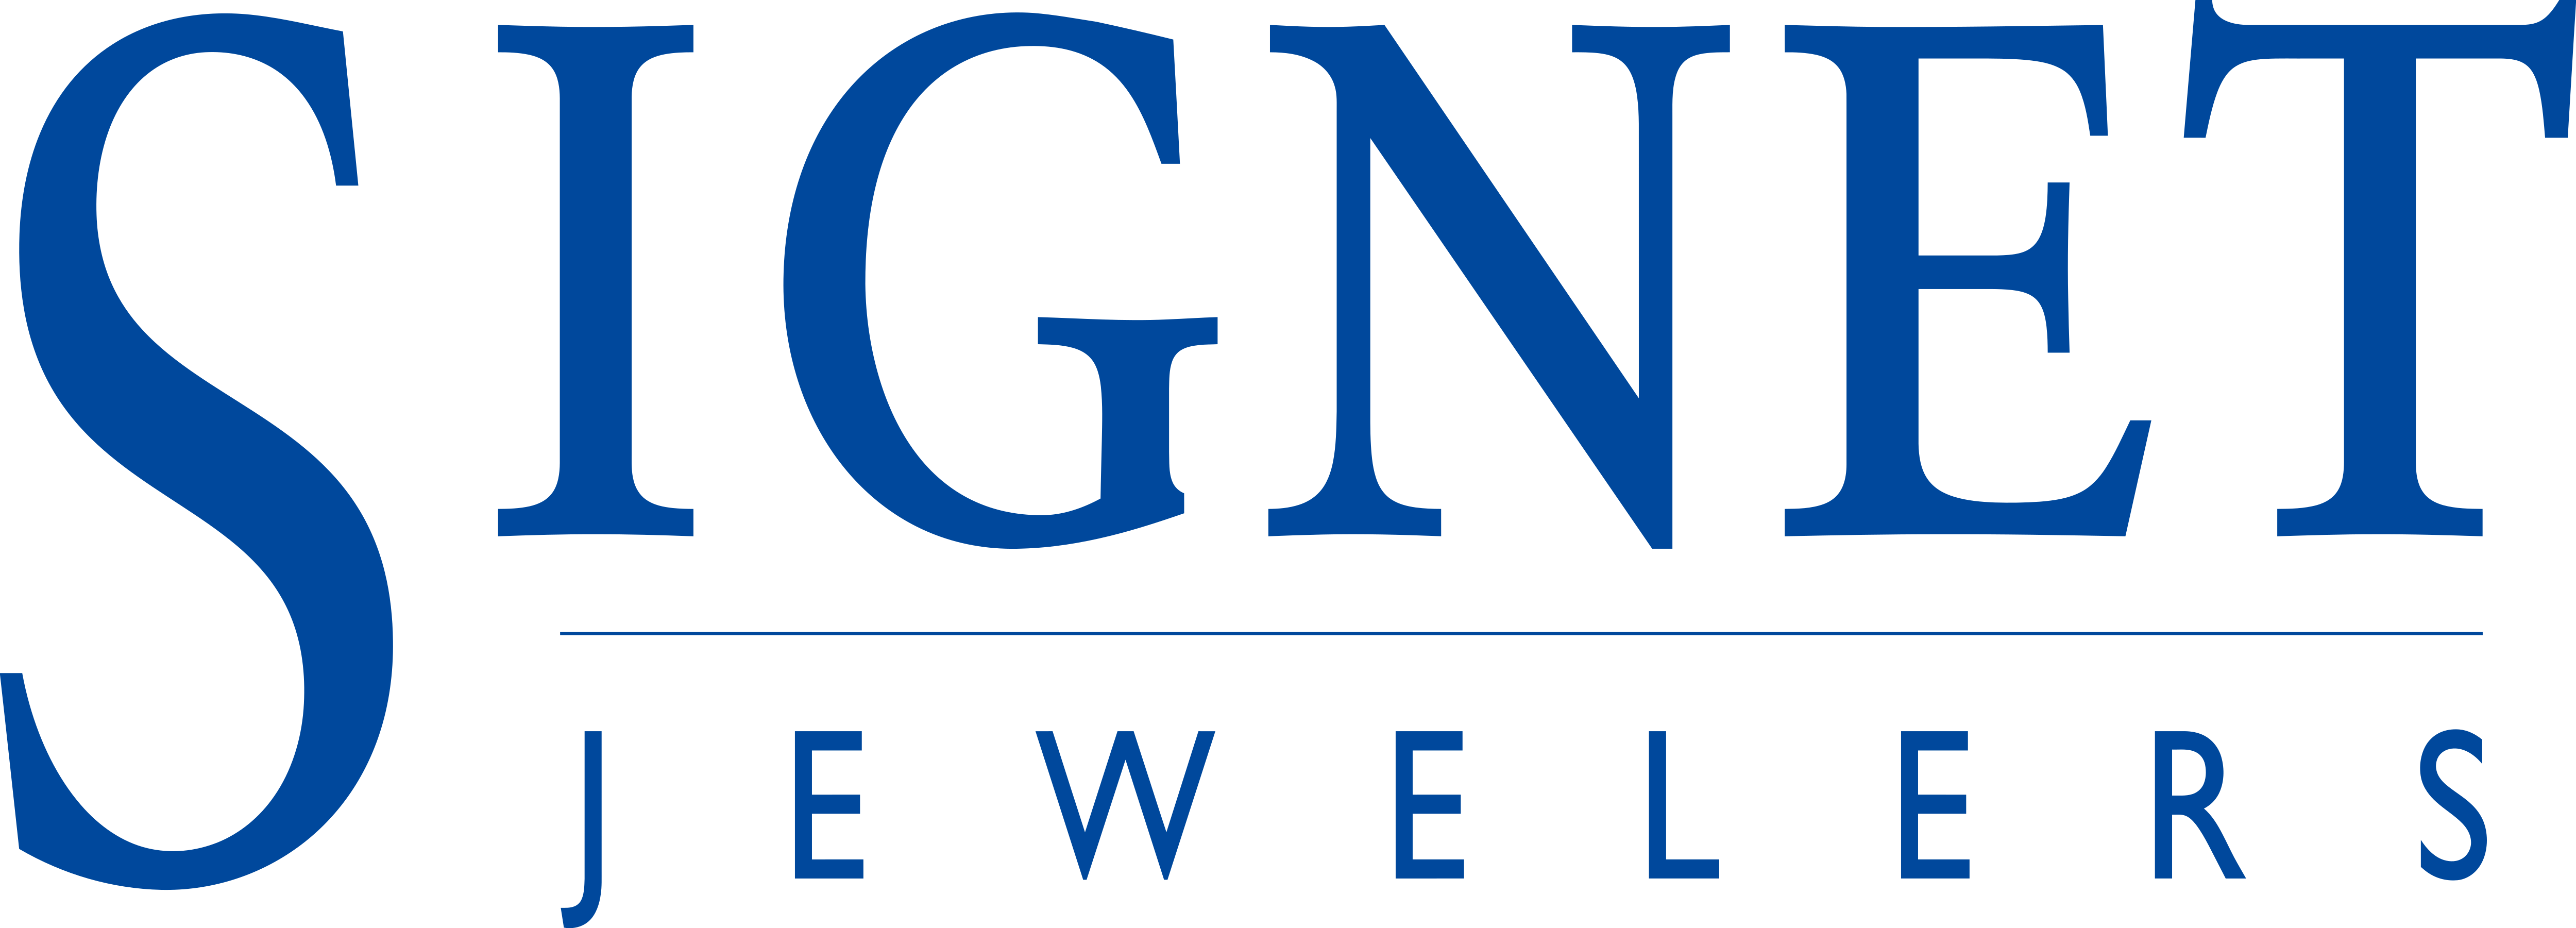 Signet Logo - Signet Jewelers – Logos Download